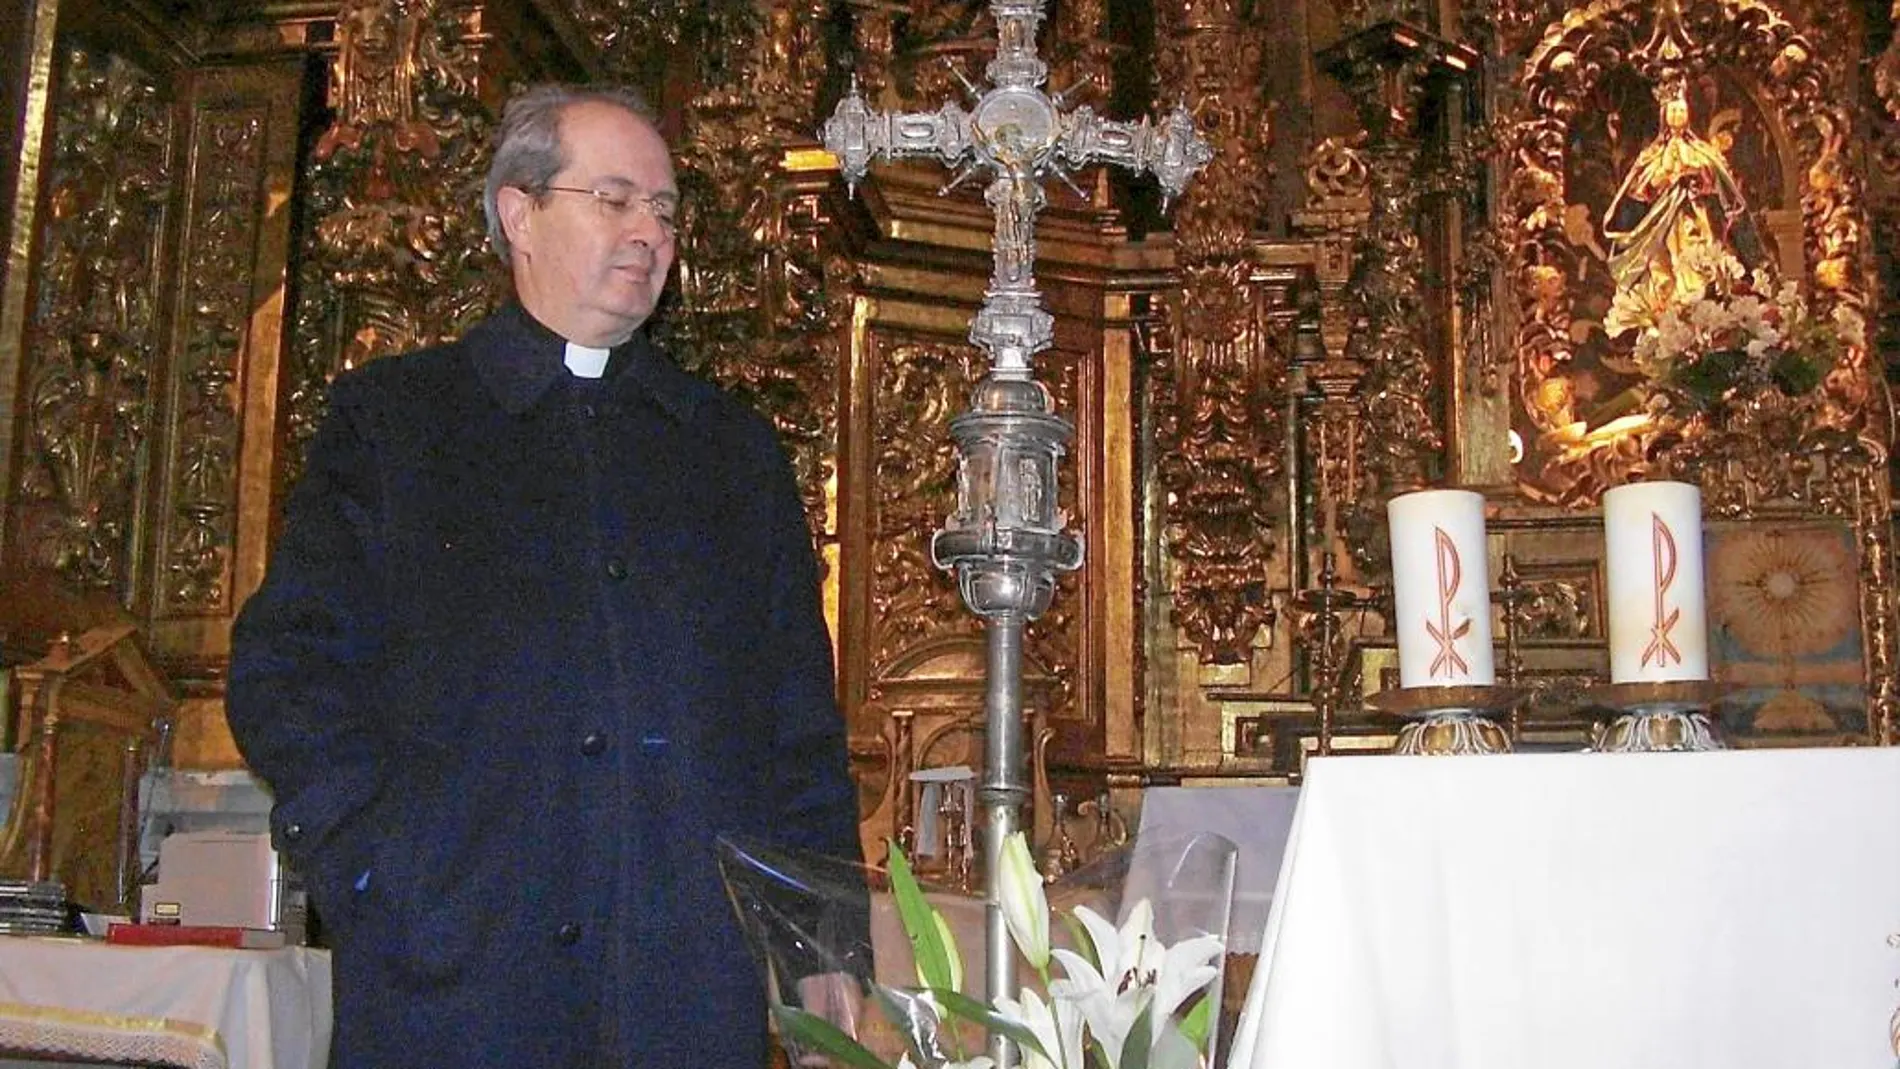 El sacerdote José Jaime Aránega Gómez observa junto al altar de la iglesia la obra de plata encontrada, del siglo XVII, que ahora pretende restaurar gracias a la colaboración ciudadana